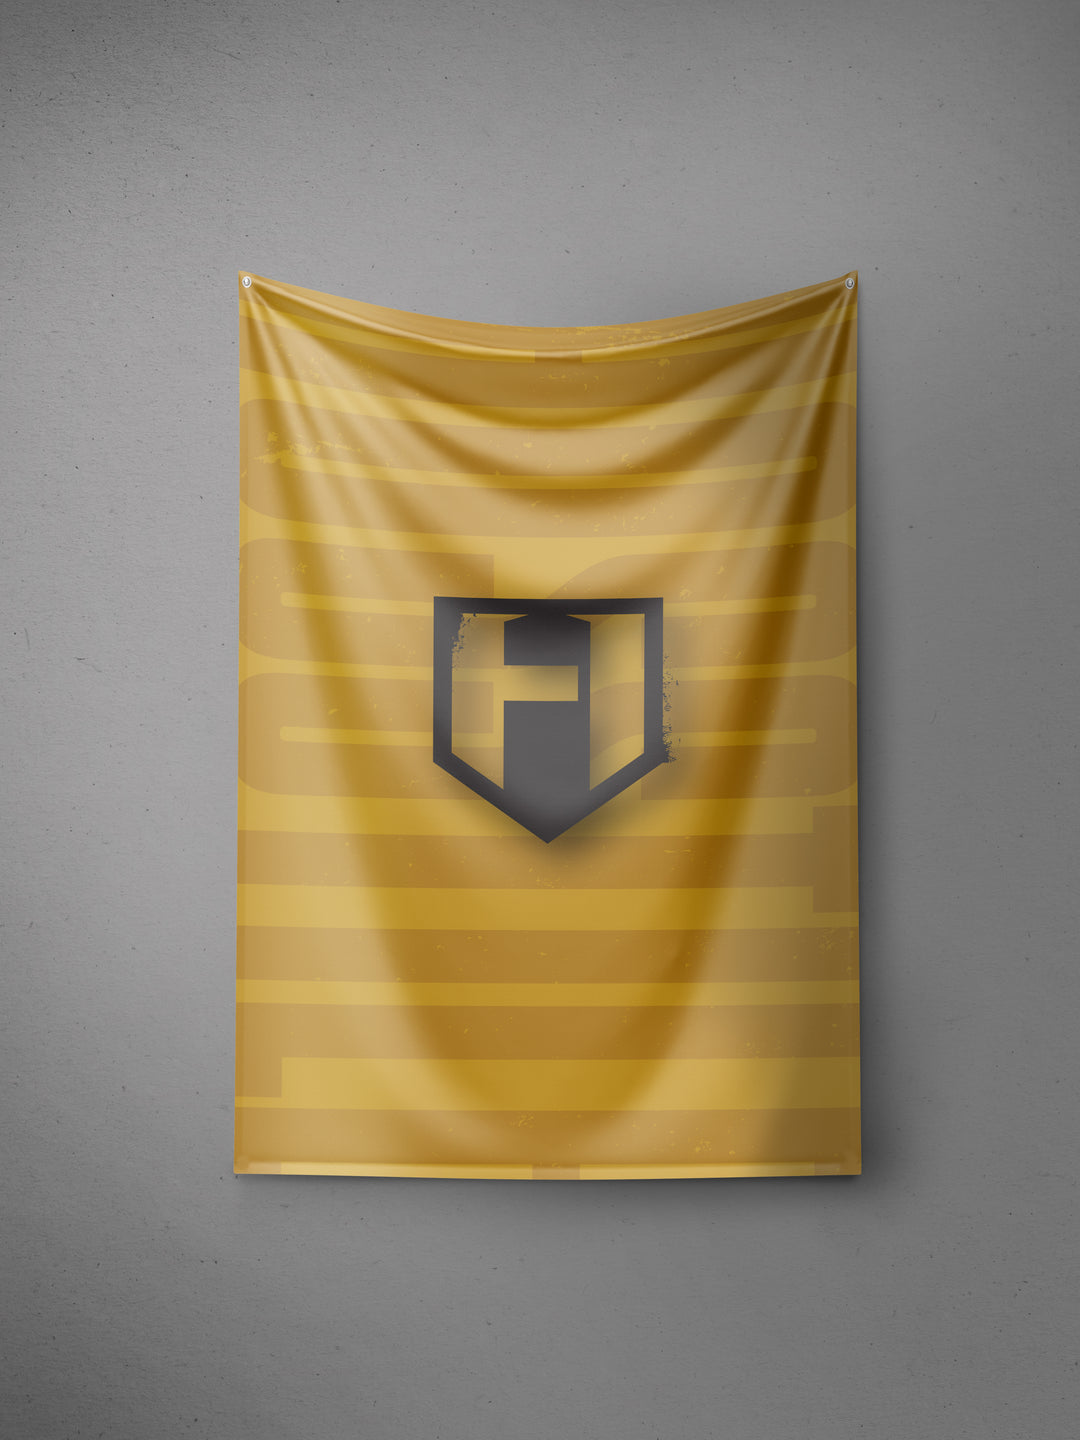 https://hosstile.com/cdn/shop/files/Hosstile-Shield-Flag-Vertical.jpg?v=1683822173&width=1080